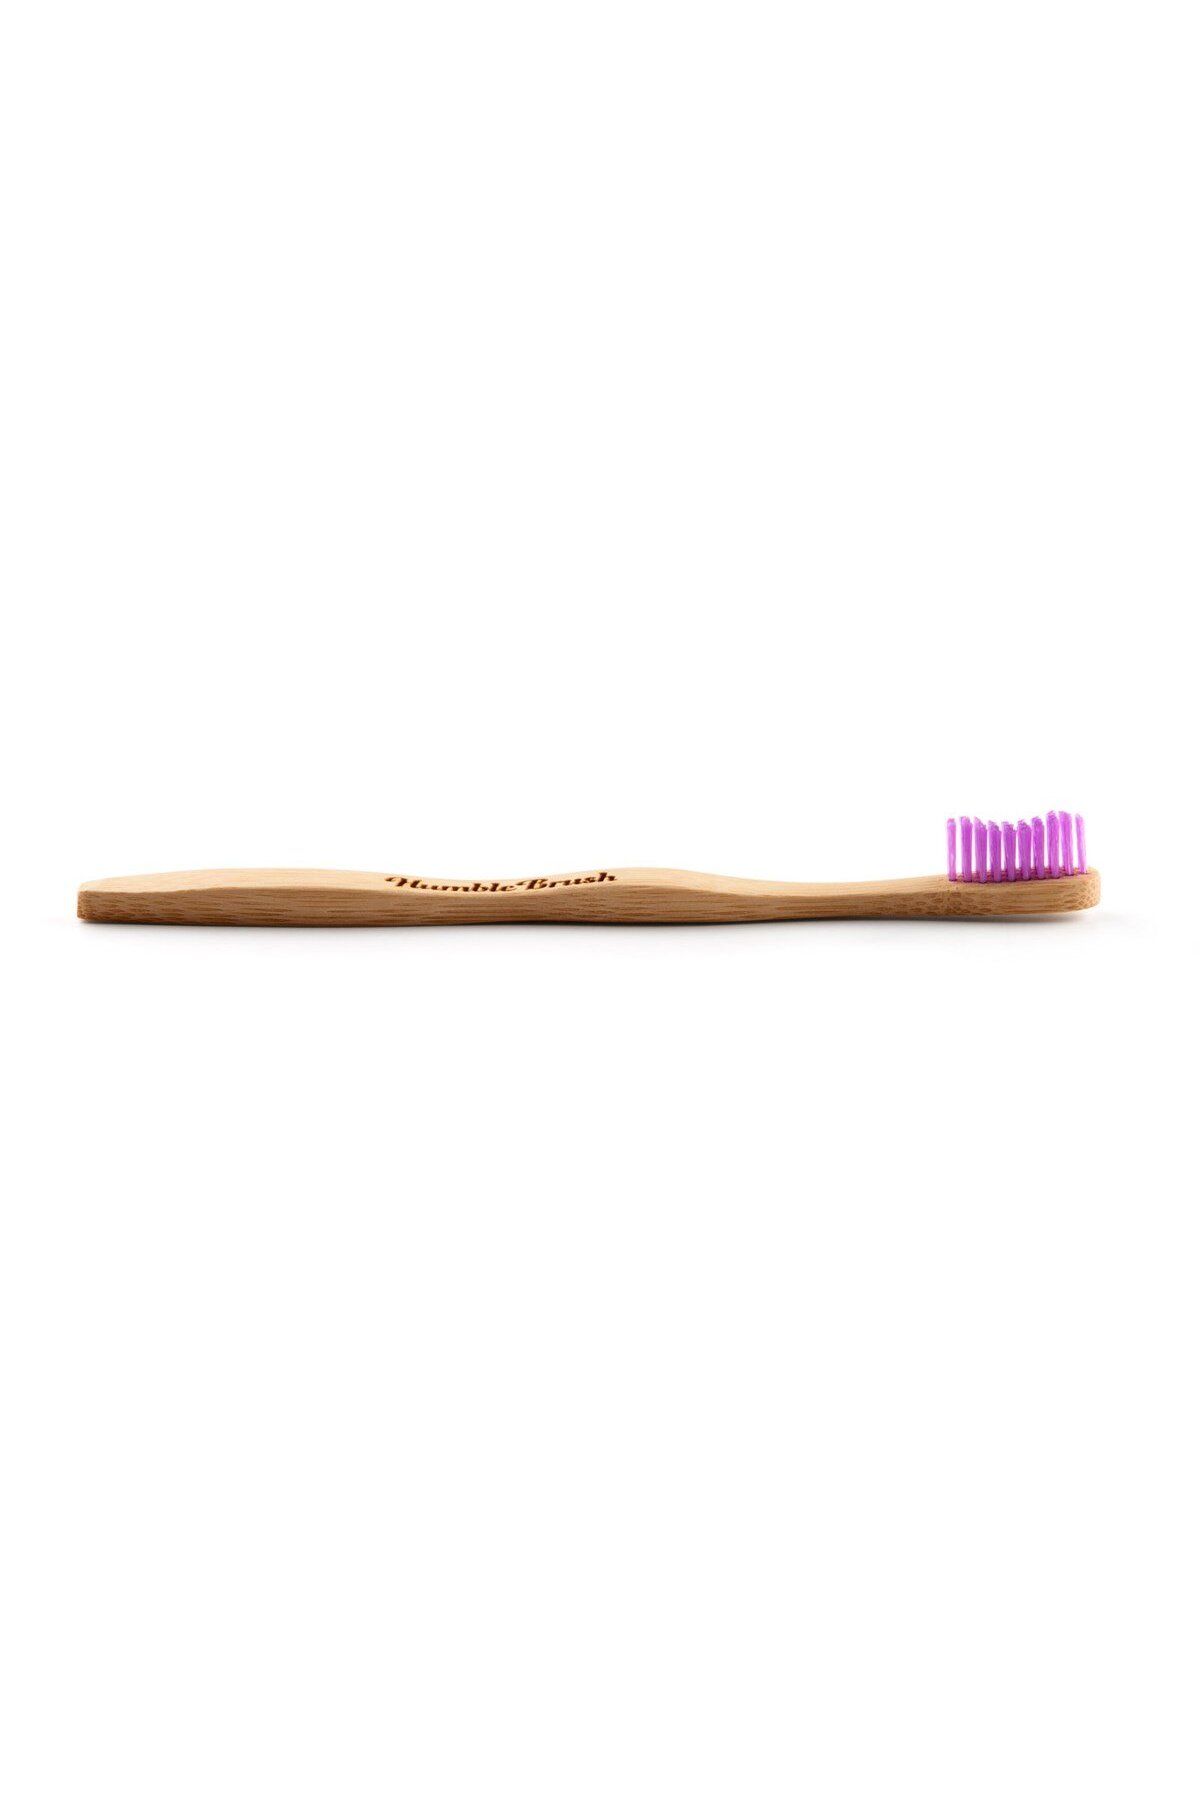 Humble Brush Yumuşak Diş Fırçası - Lila